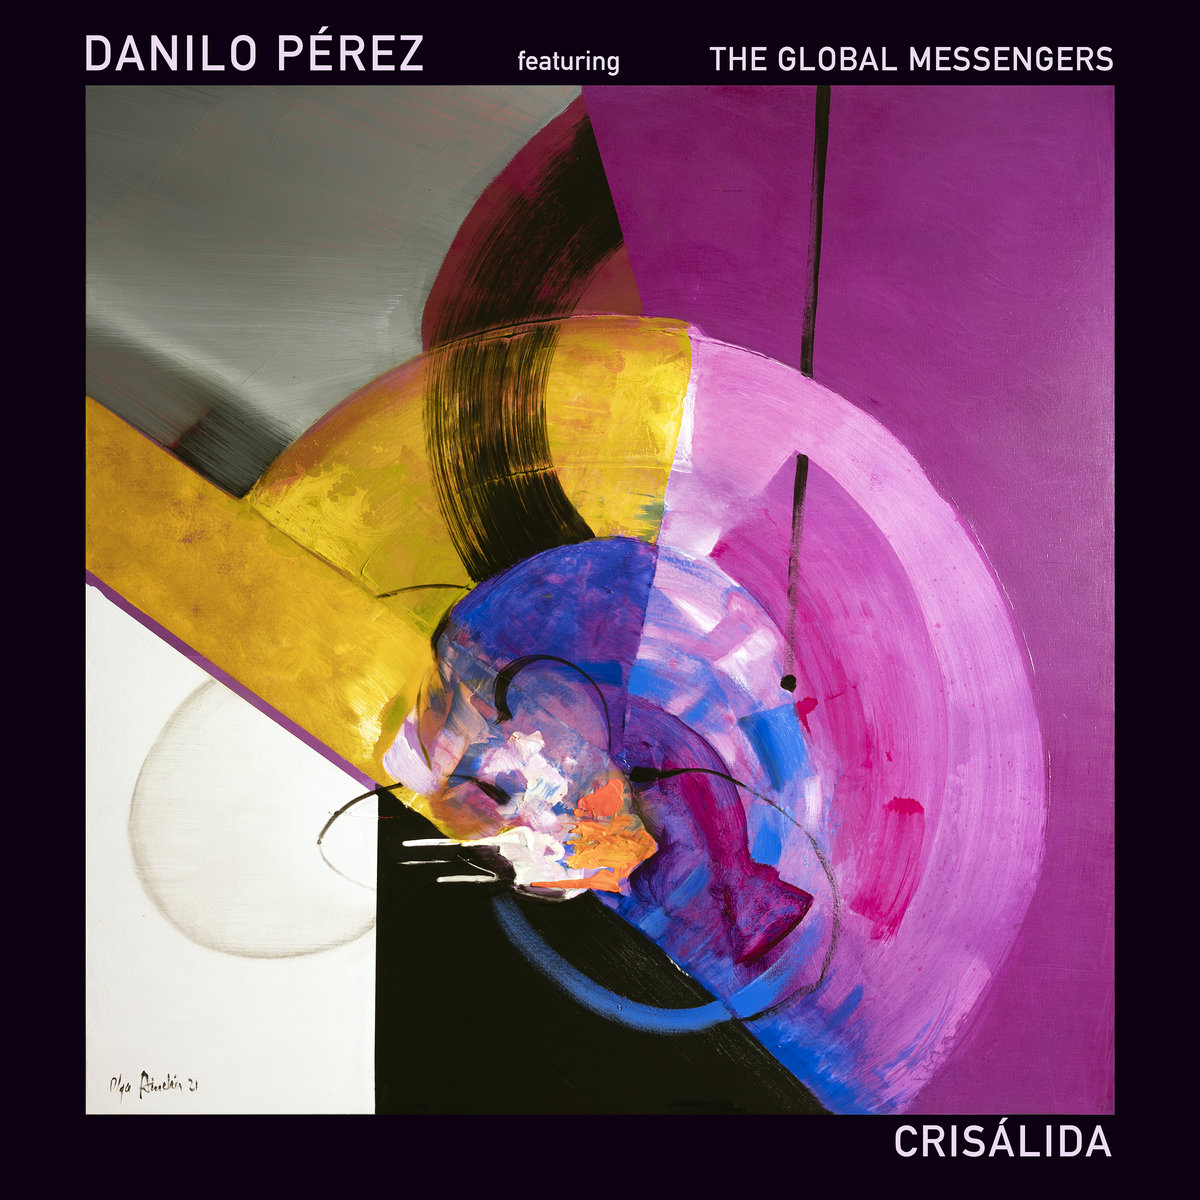 Danilo Pérez Crisálida album 2022 jazz progjazz discos destacados latinoamérica cover caratula